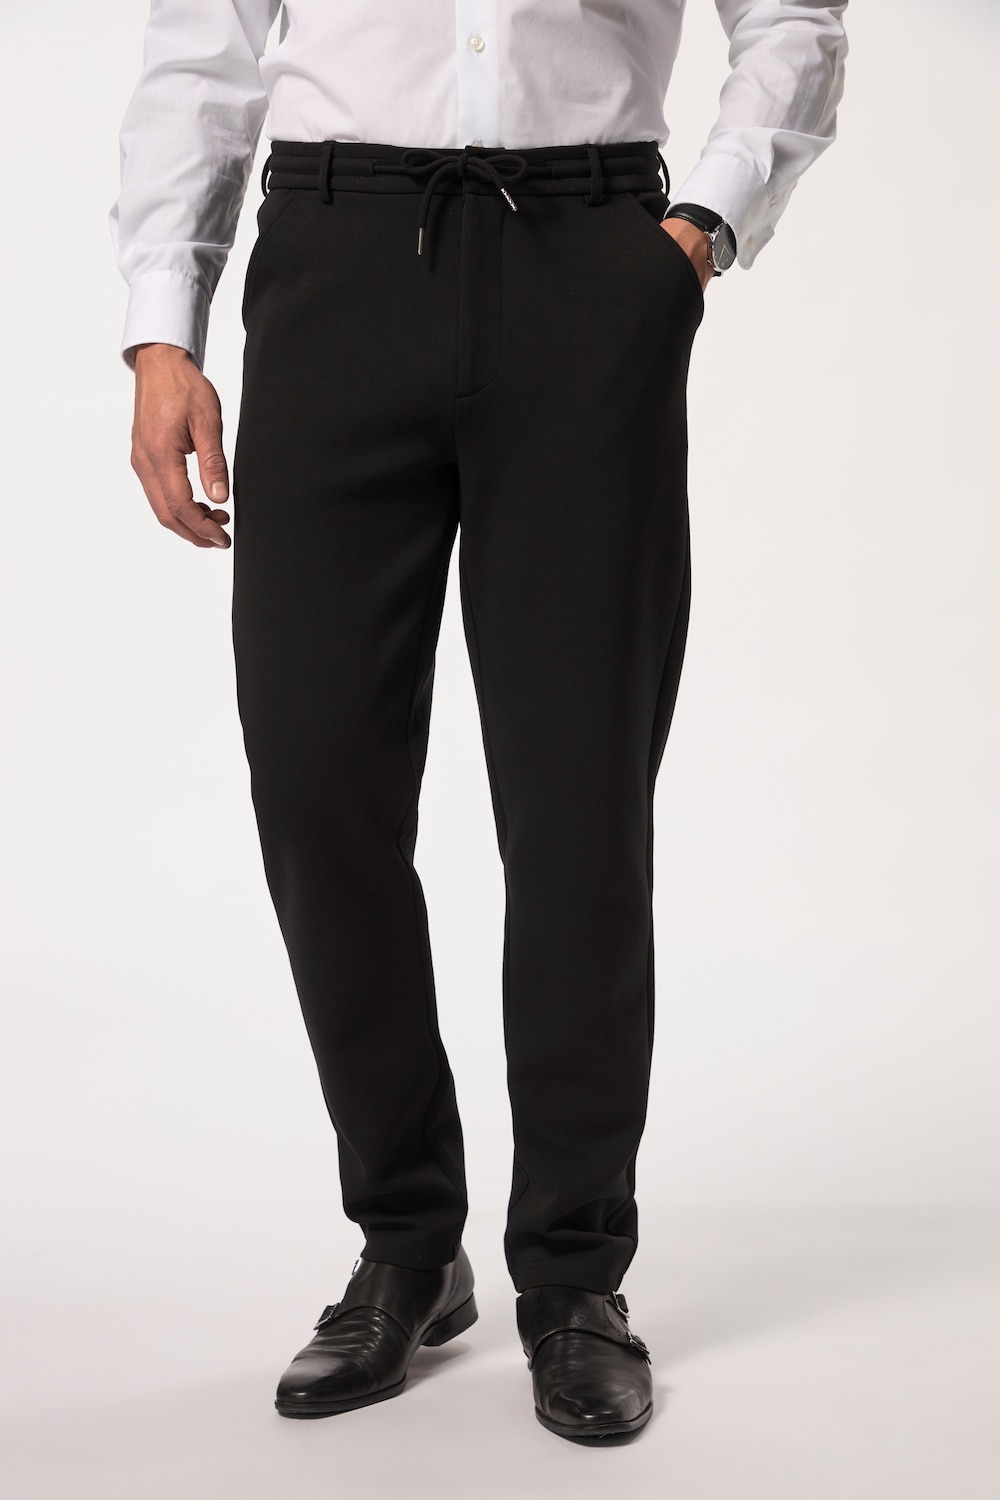 Große Größen Jersey-Hose, Herren, schwarz, Größe: 6XL, Baumwolle/Polyester, JP1880 von JP1880